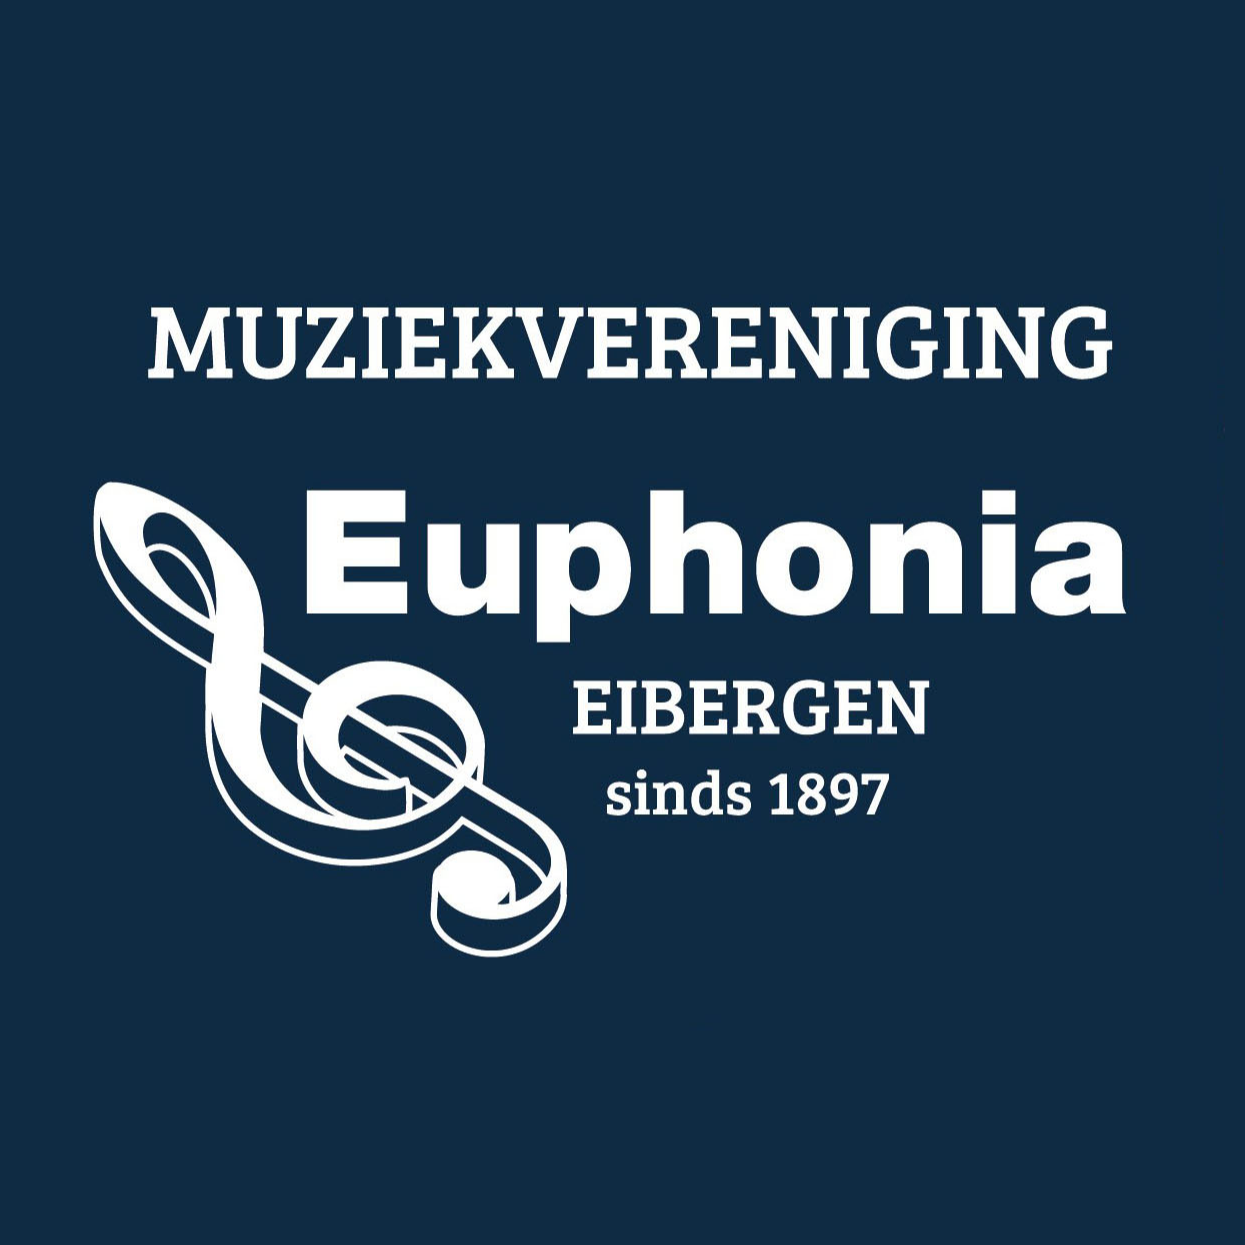 Muziekvereniging Euphonia Eibergen